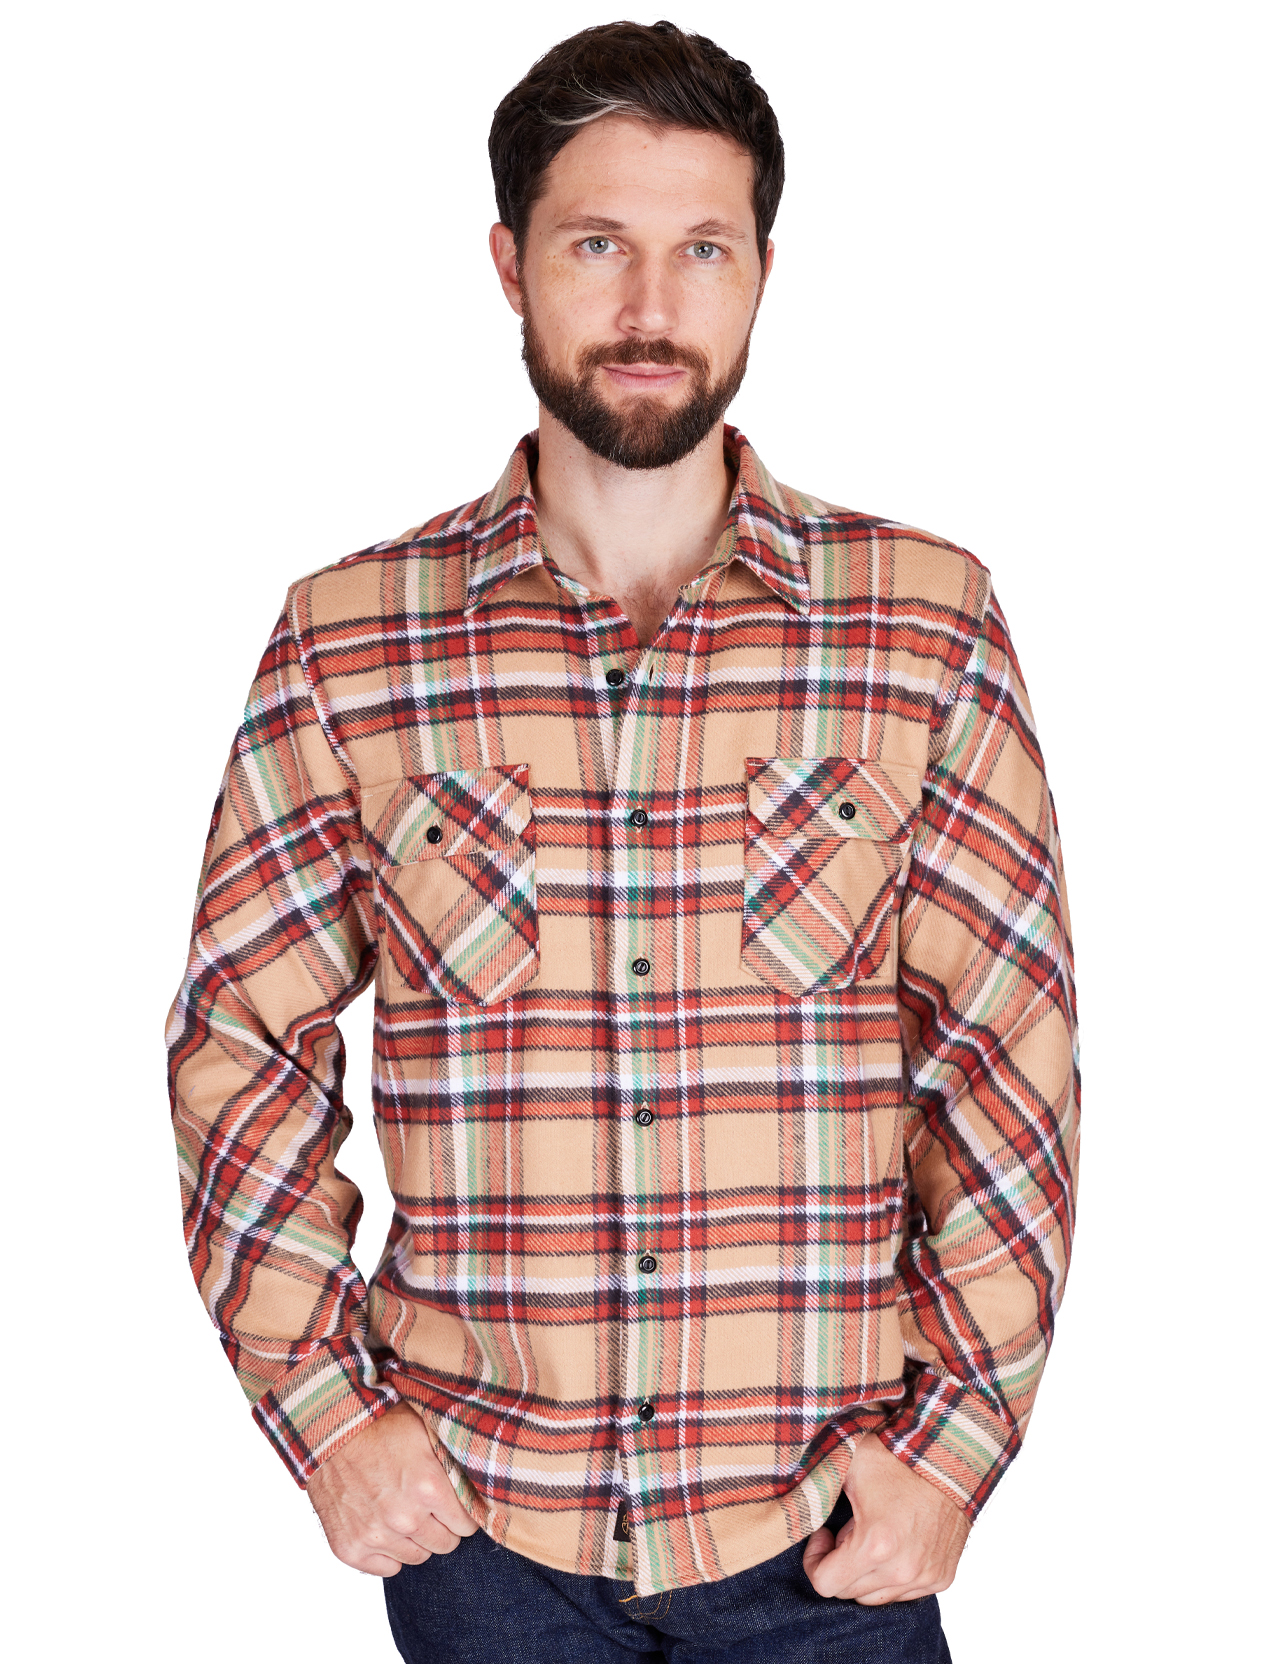 Indigofera - Bryson Flannel Check Shirt - Beige/Red/White/Green